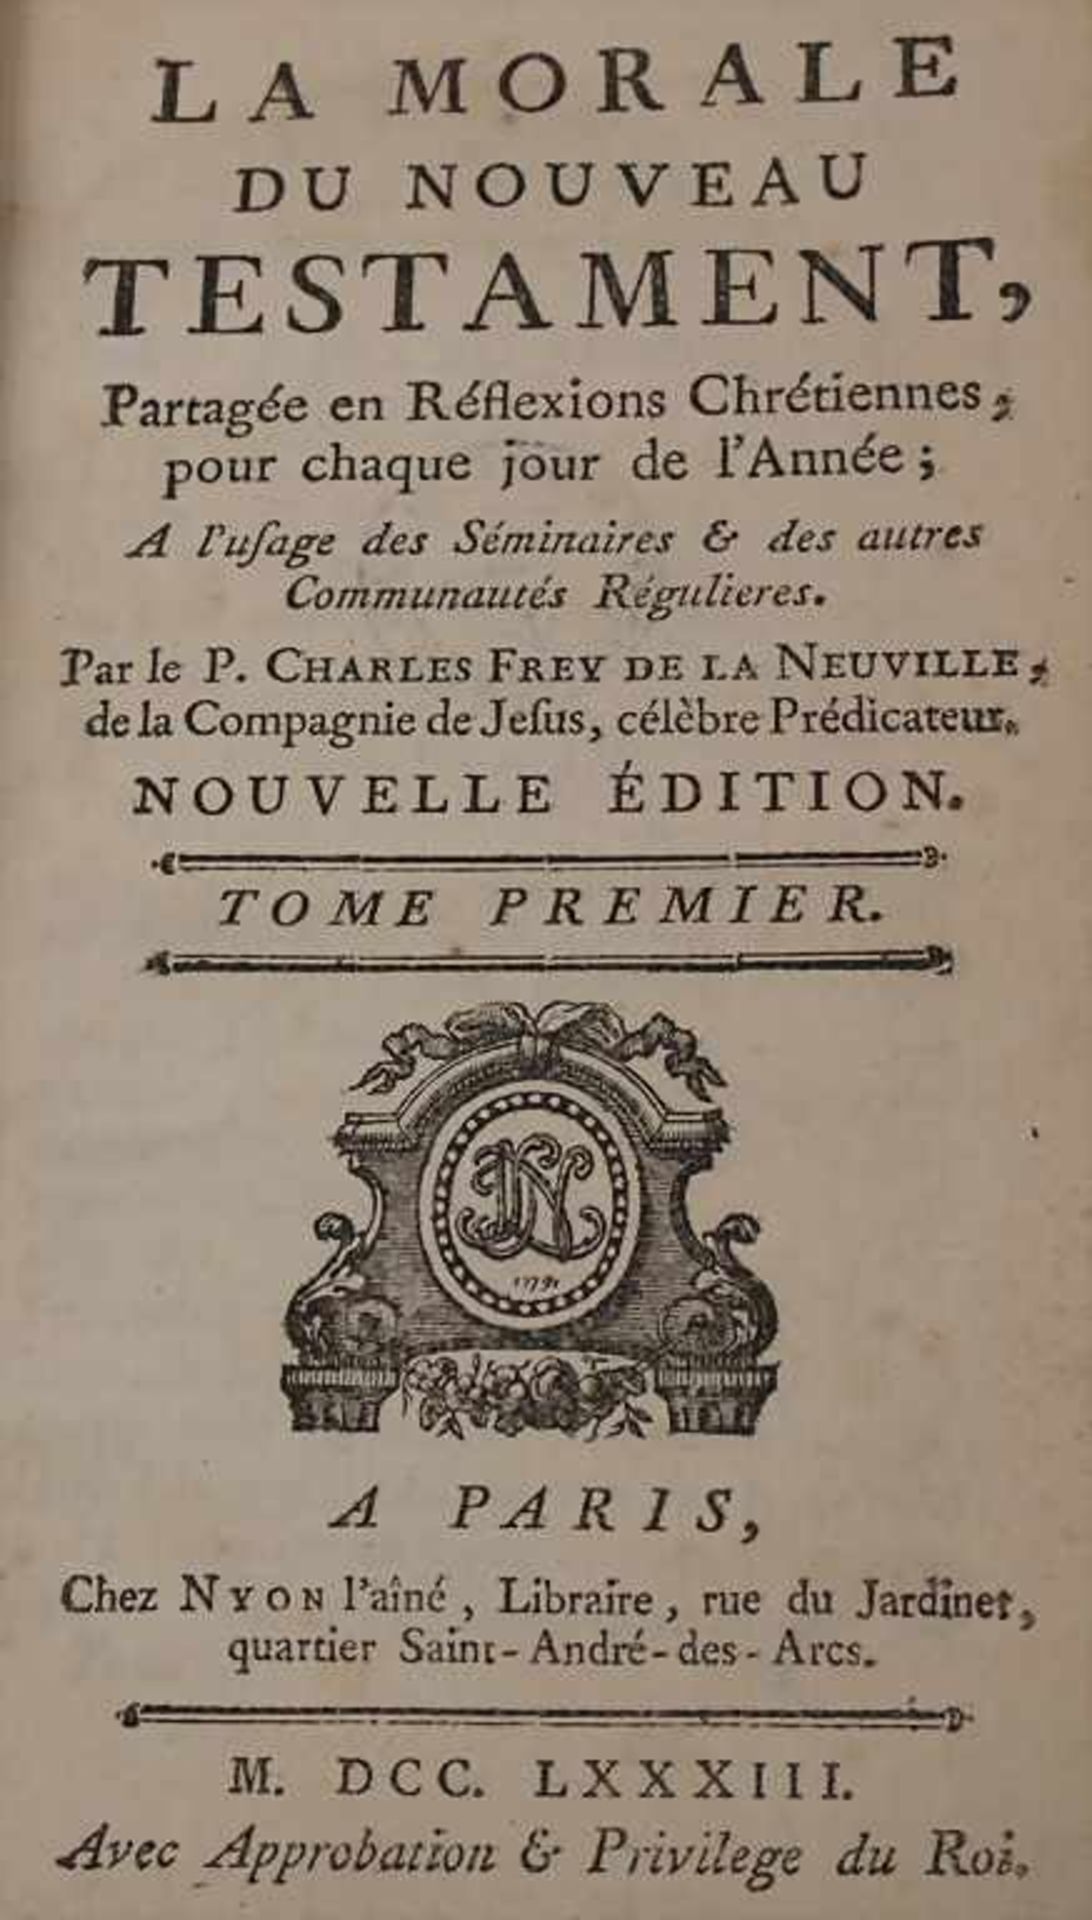 Frey de la Neuville, Charles: La moral de Nouveau TéstamentTitel: La moral de Nouveau Téstament, - Image 3 of 3